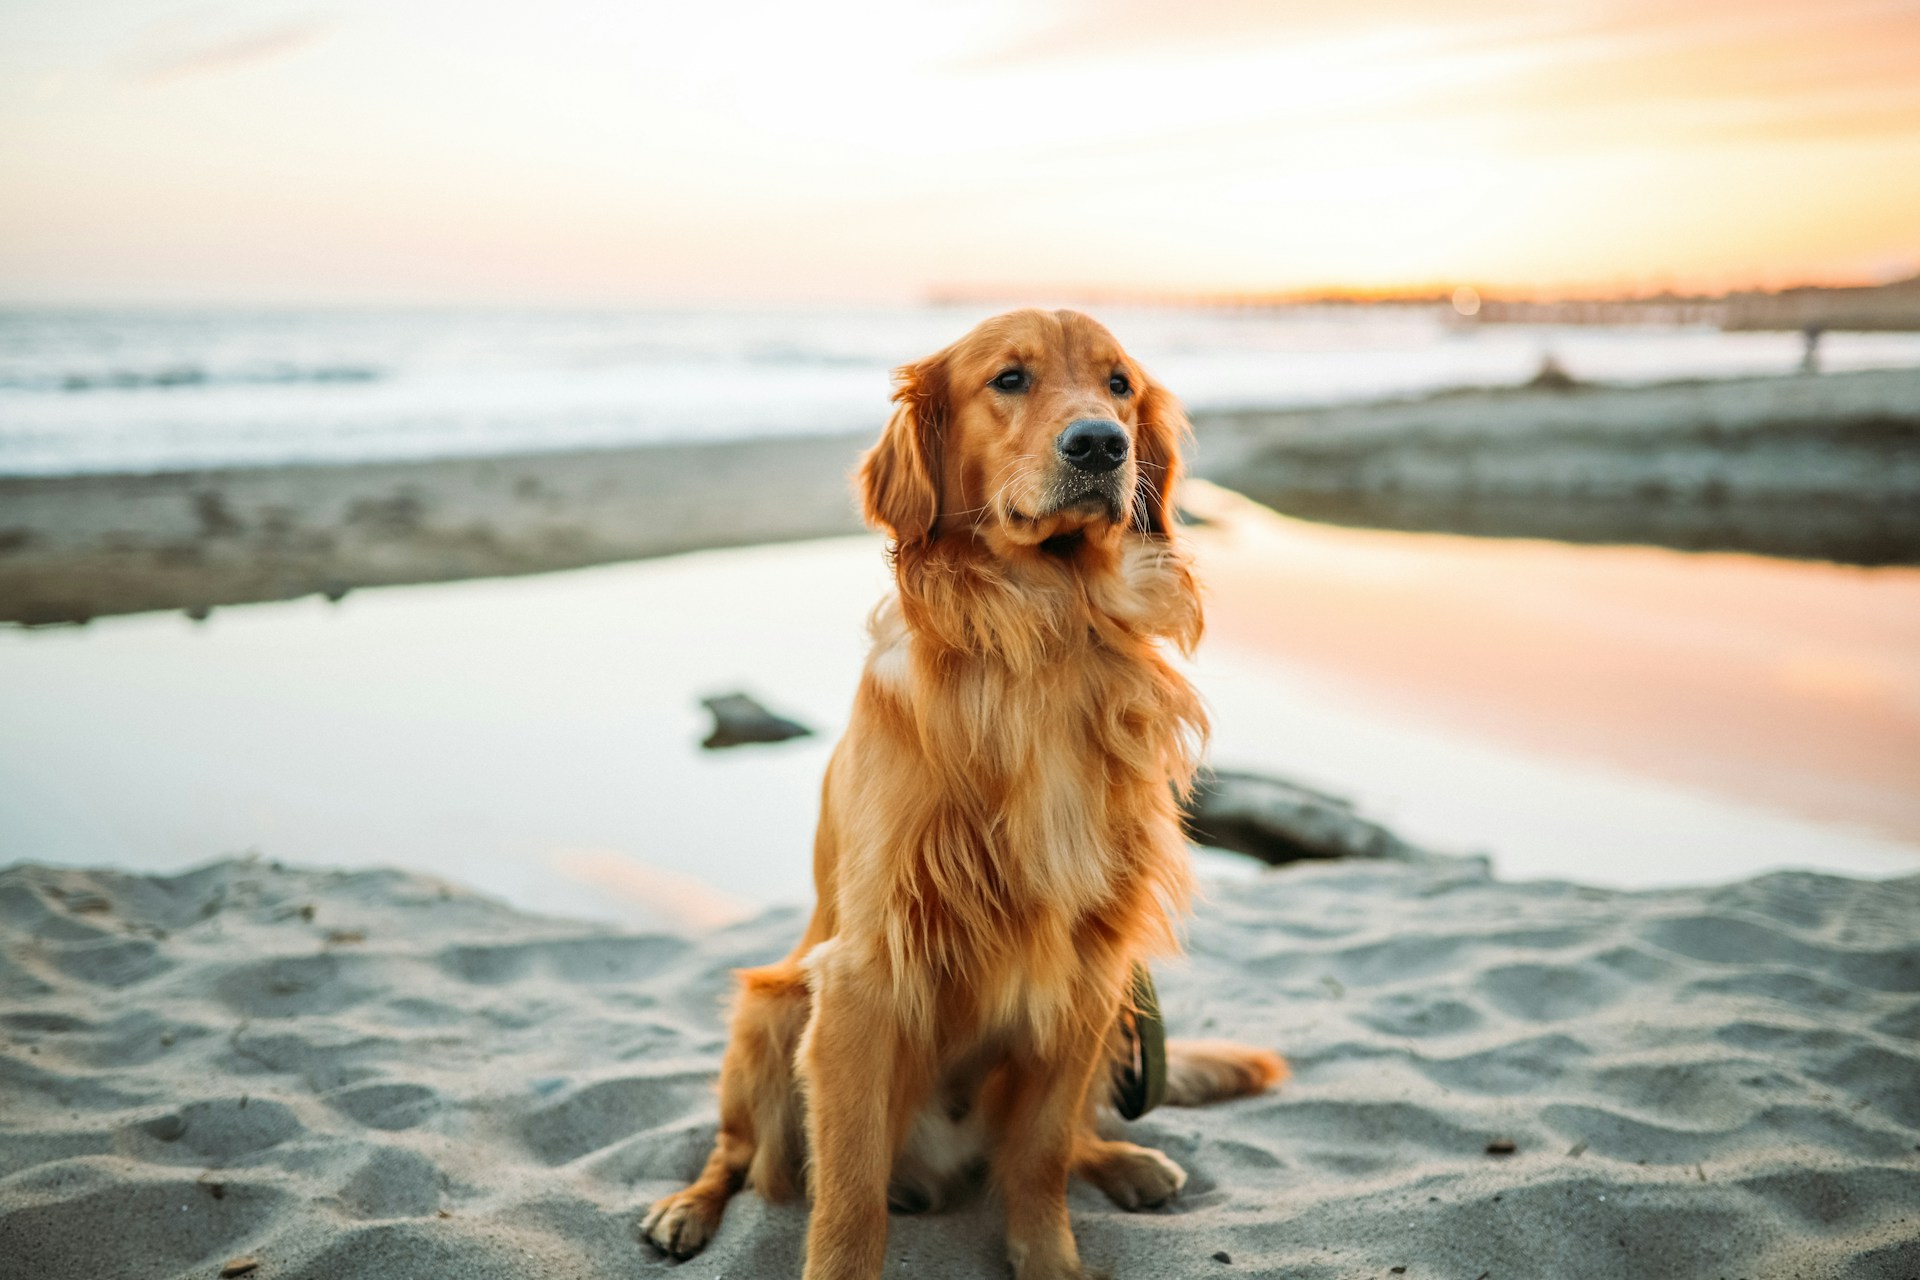 A Golden Retriever sitting on a beach